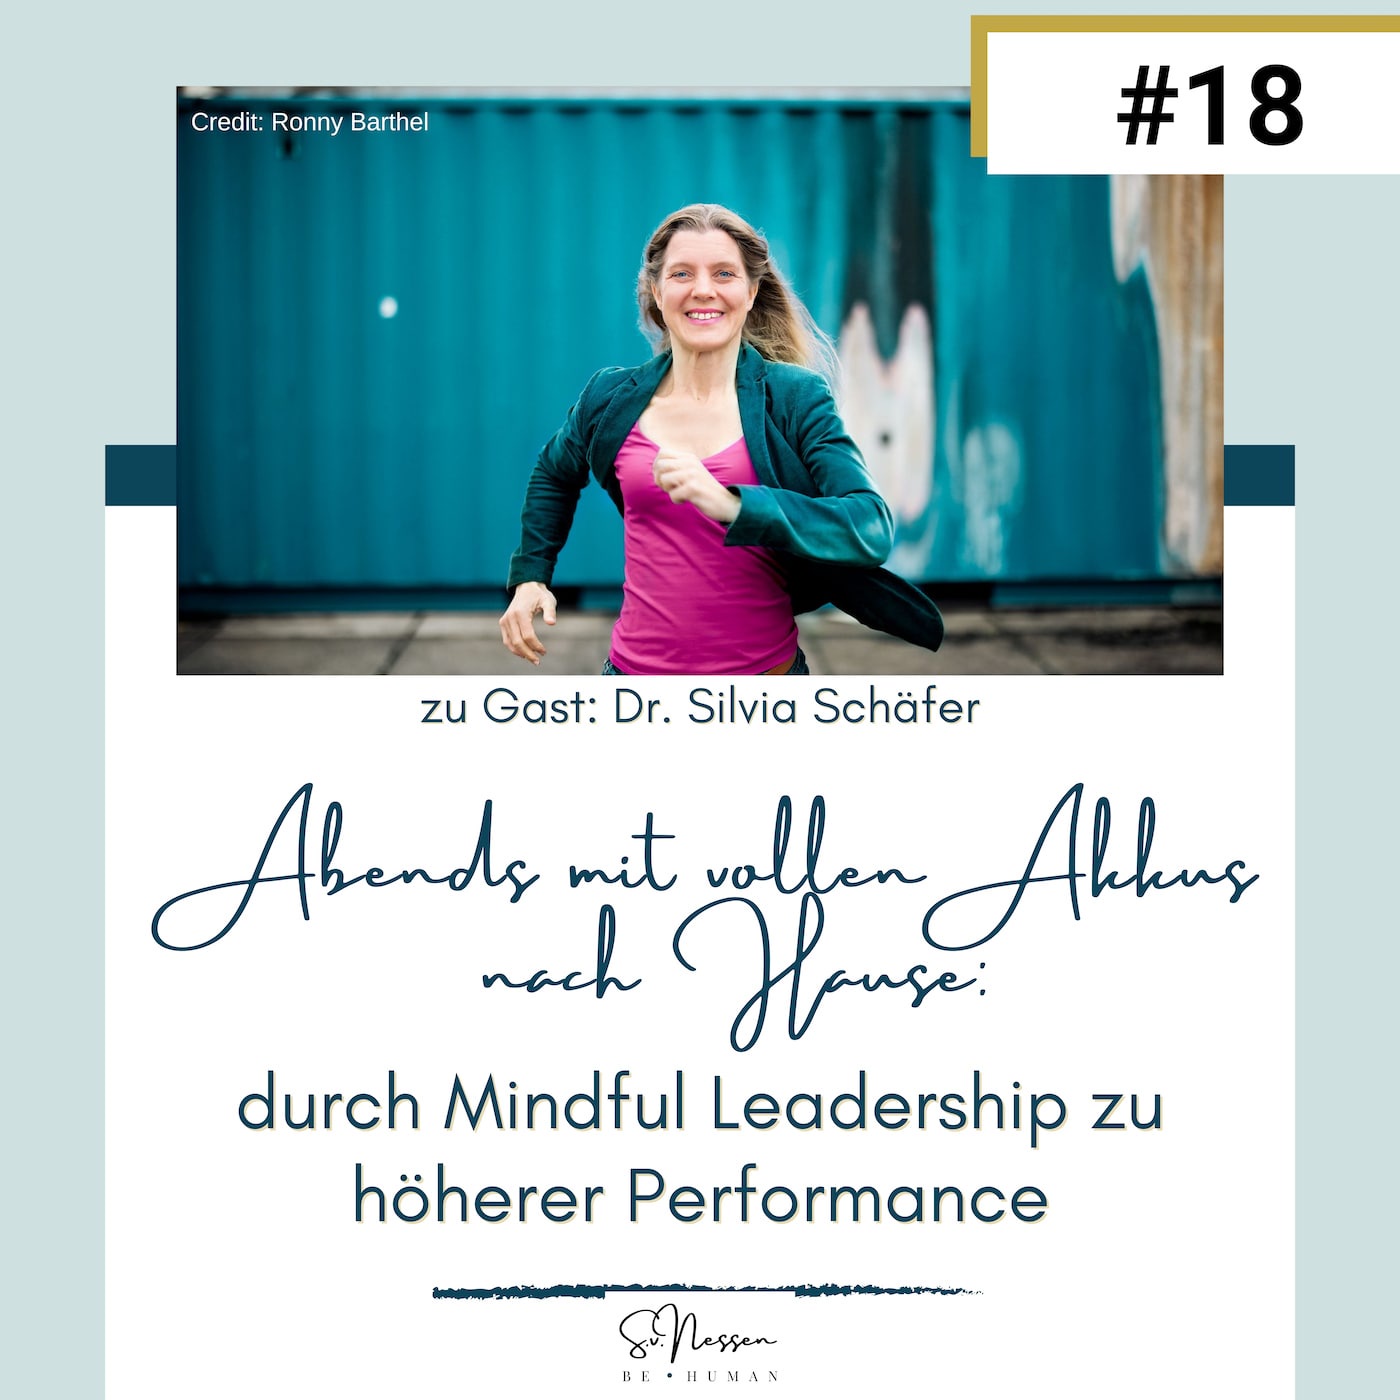 Abends mit vollen Akkus nach Hause: durch Mindful Leadership zu höherer Performance mit Dr. Silvia Schäfer